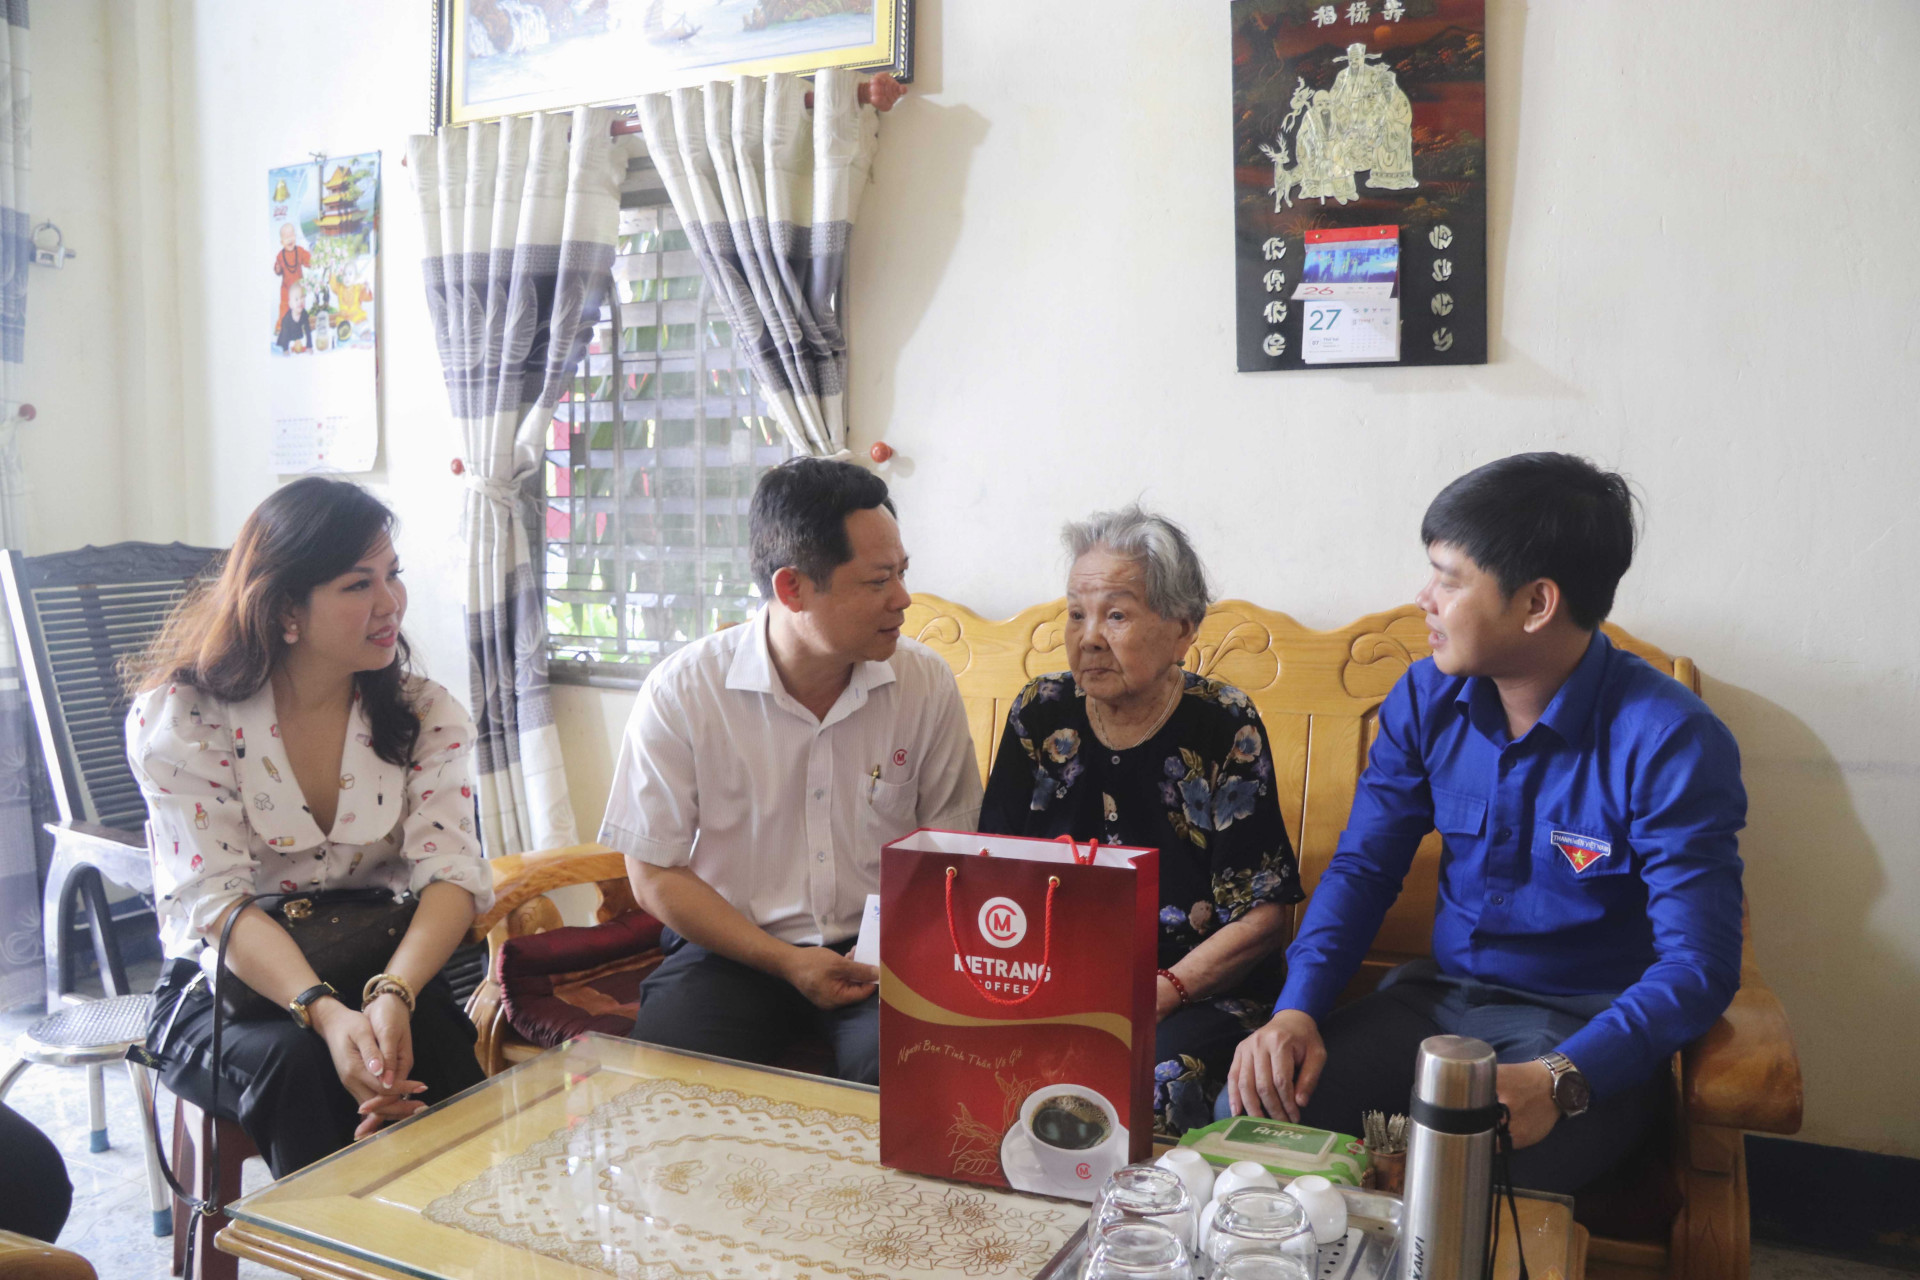 Tỉnh đoàn Khánh Hòa cùng Hội Doanh nhân trẻ Khánh Hoà tặng quà cho Mẹ Việt Nam anh hùng.